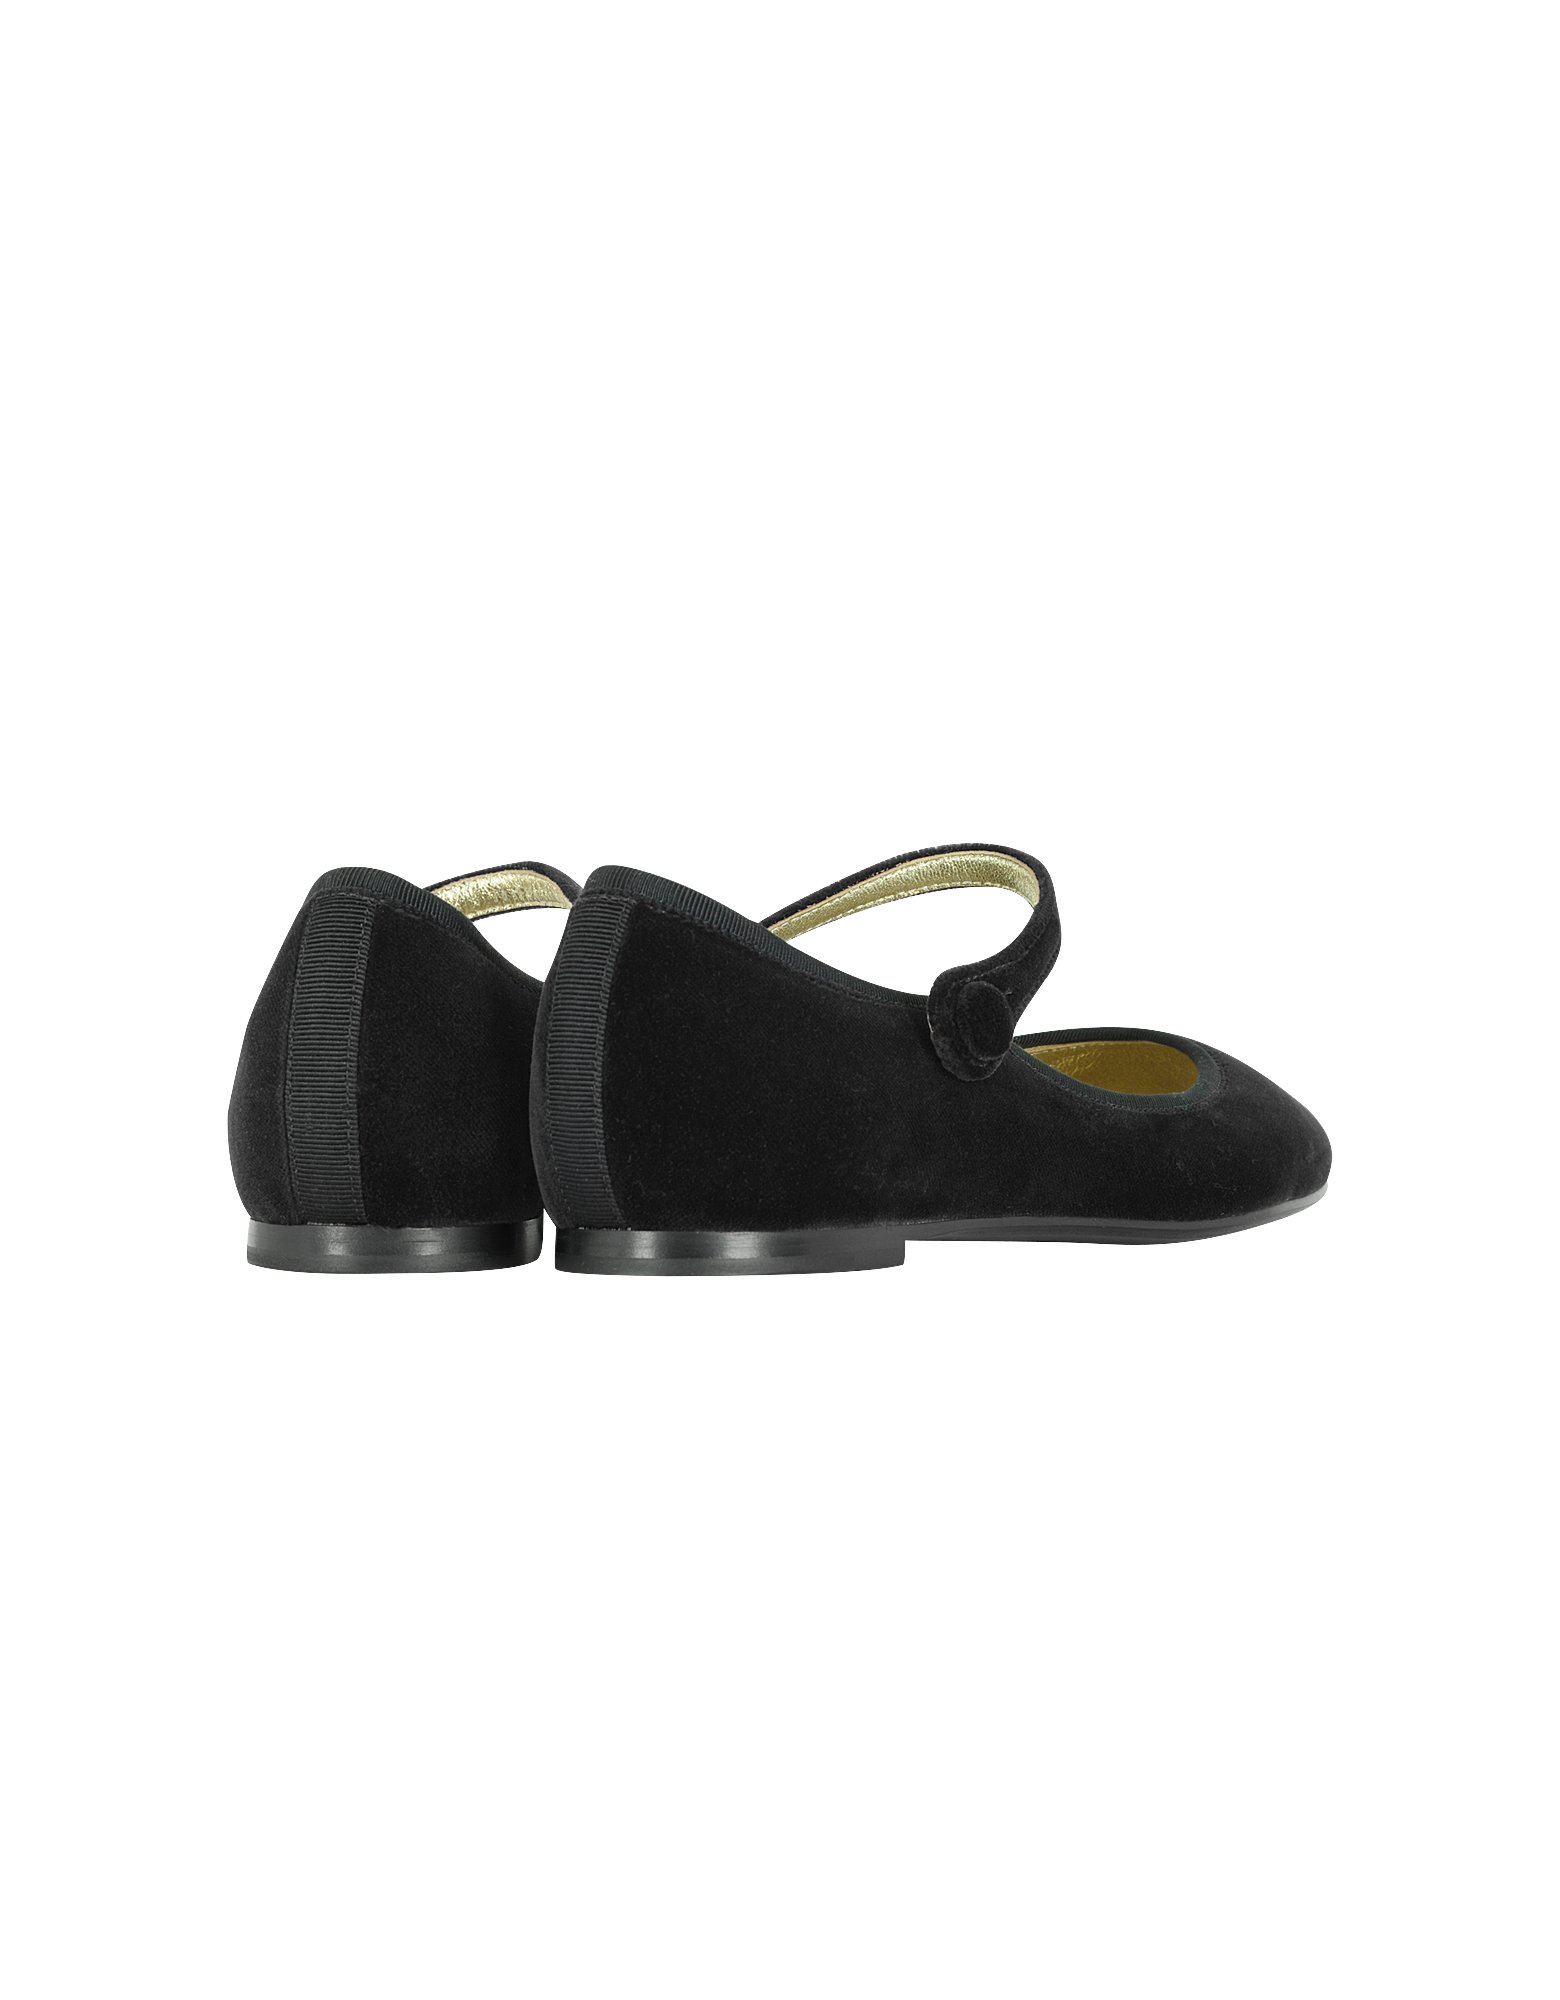 Marc jacobs Black Velvet Mary Jane Shoes in Black | Lyst